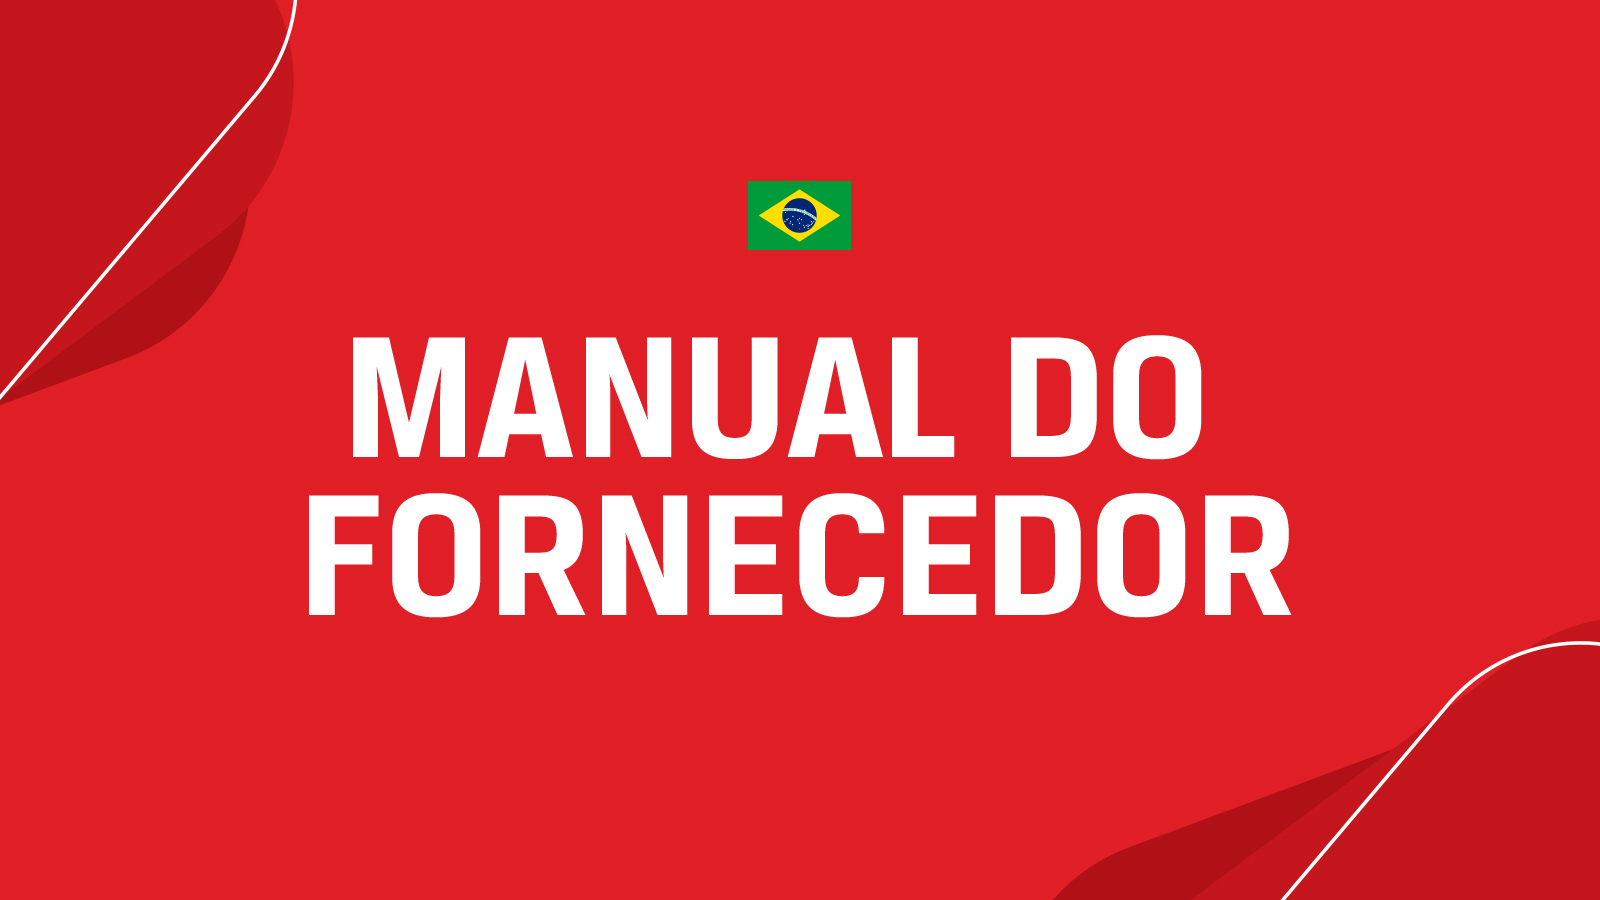 Manual do fornecedor - Português